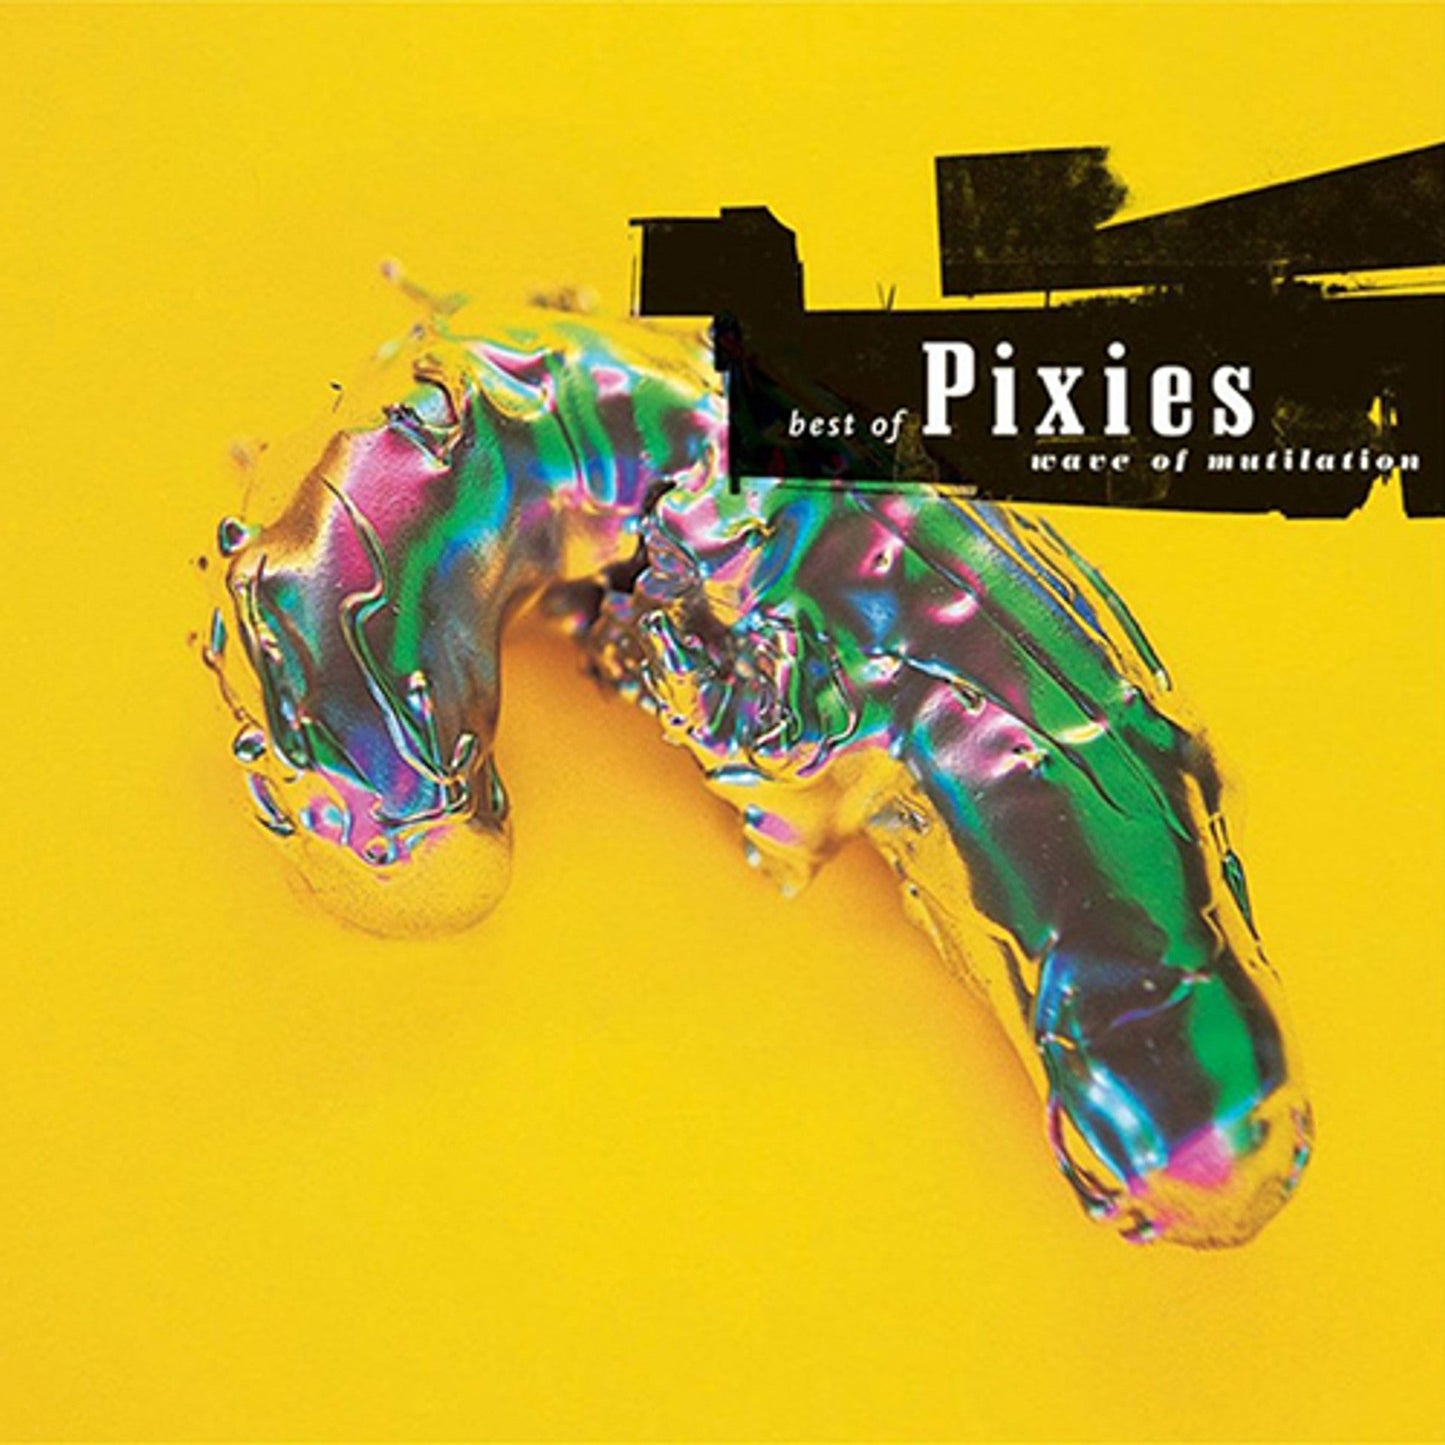 PIXIES - WAVE OF MUTILATION: BEST OF PIXIES - 2-LP - VINYL LP